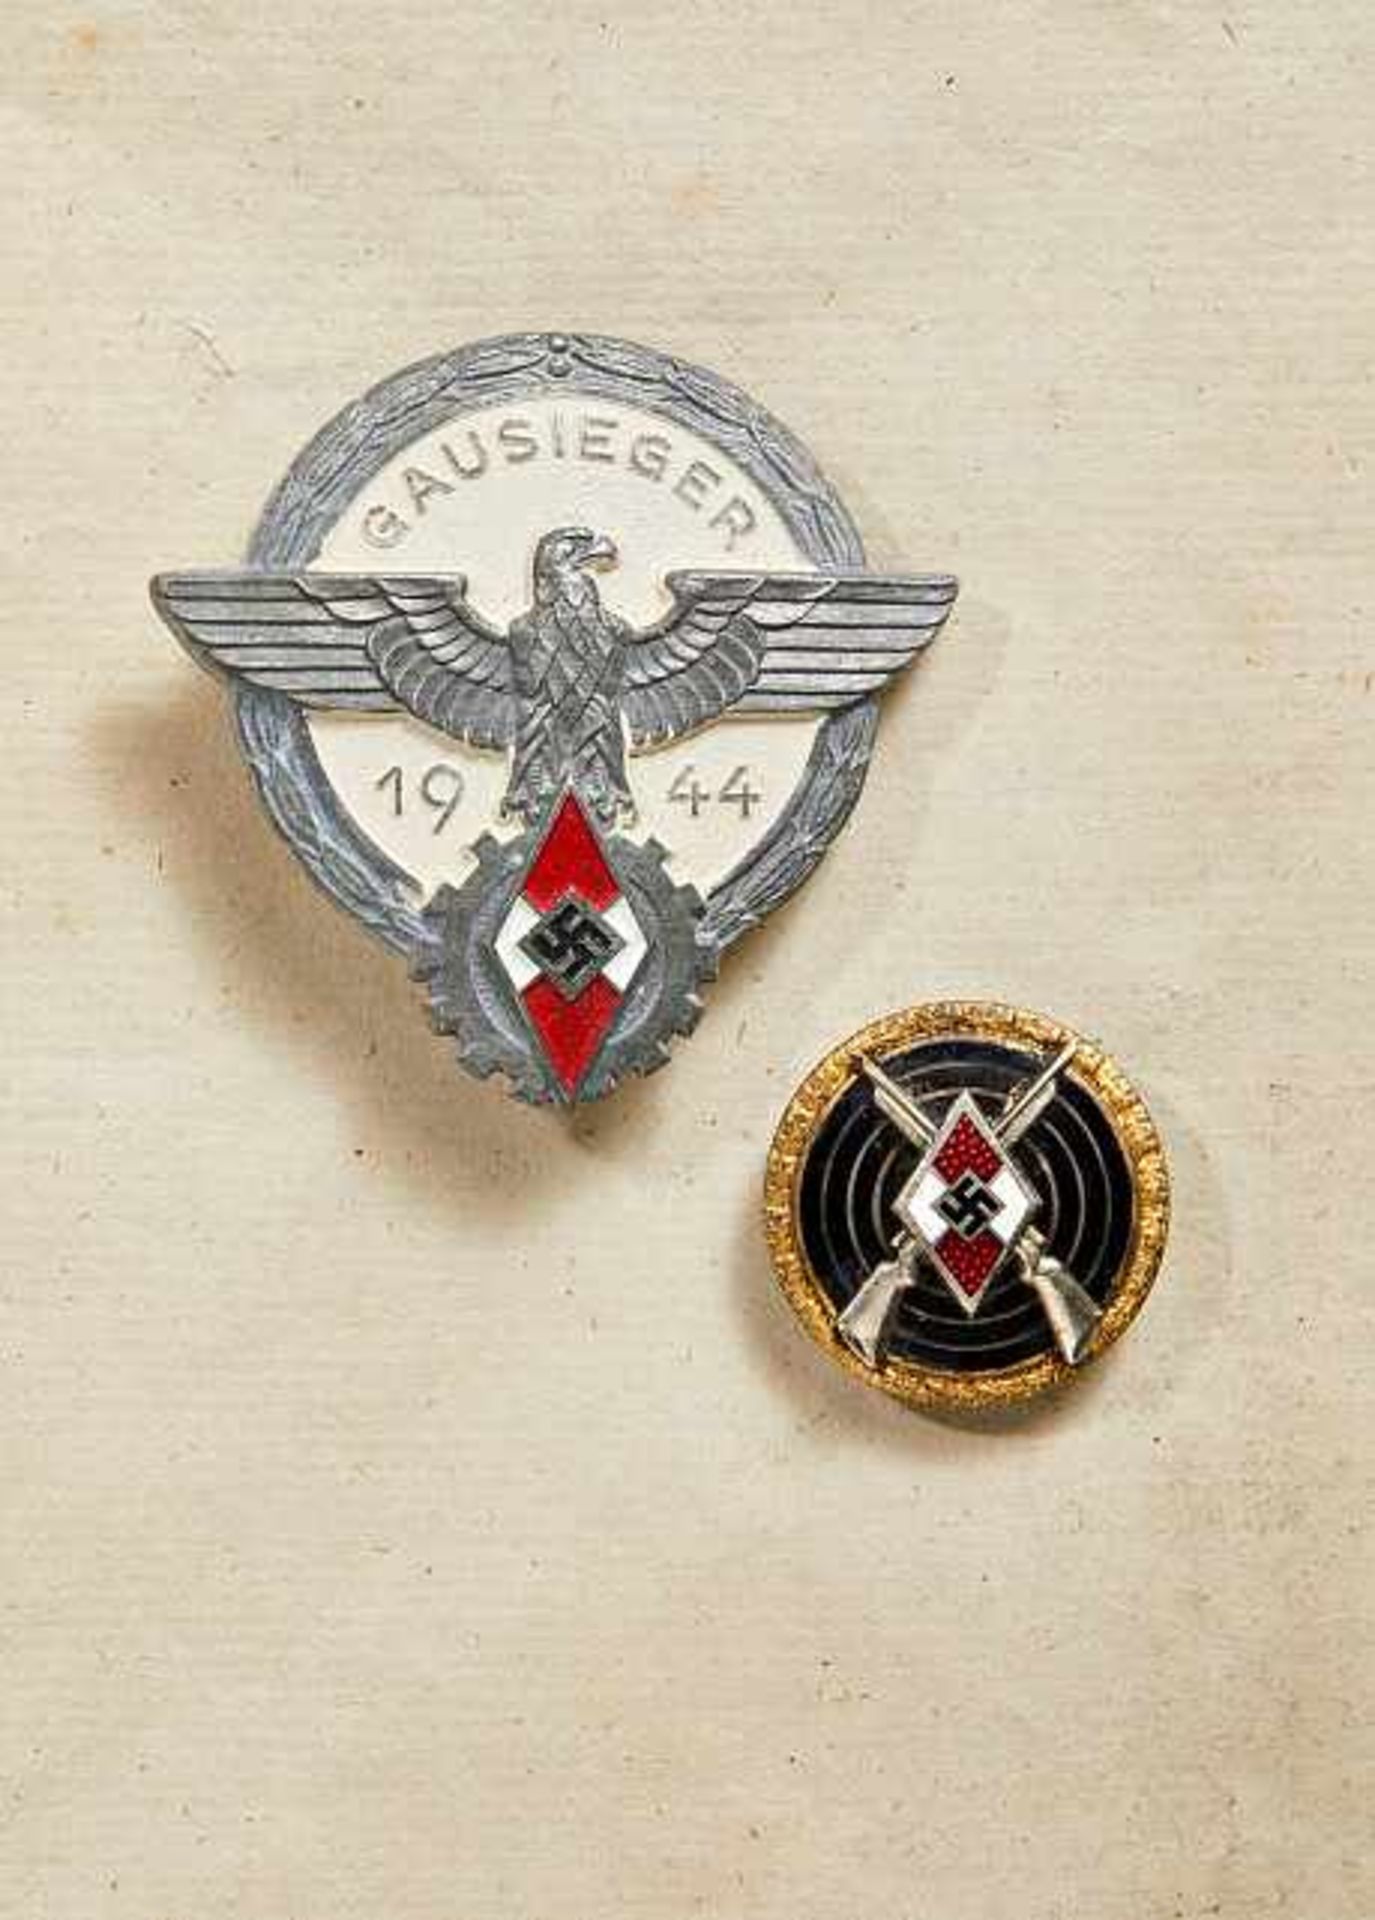 Deutsches Reich 1933 - 1945 - HJ - Hitlerjugend : Hitler Youth Marksmanship Badge.Badge shows